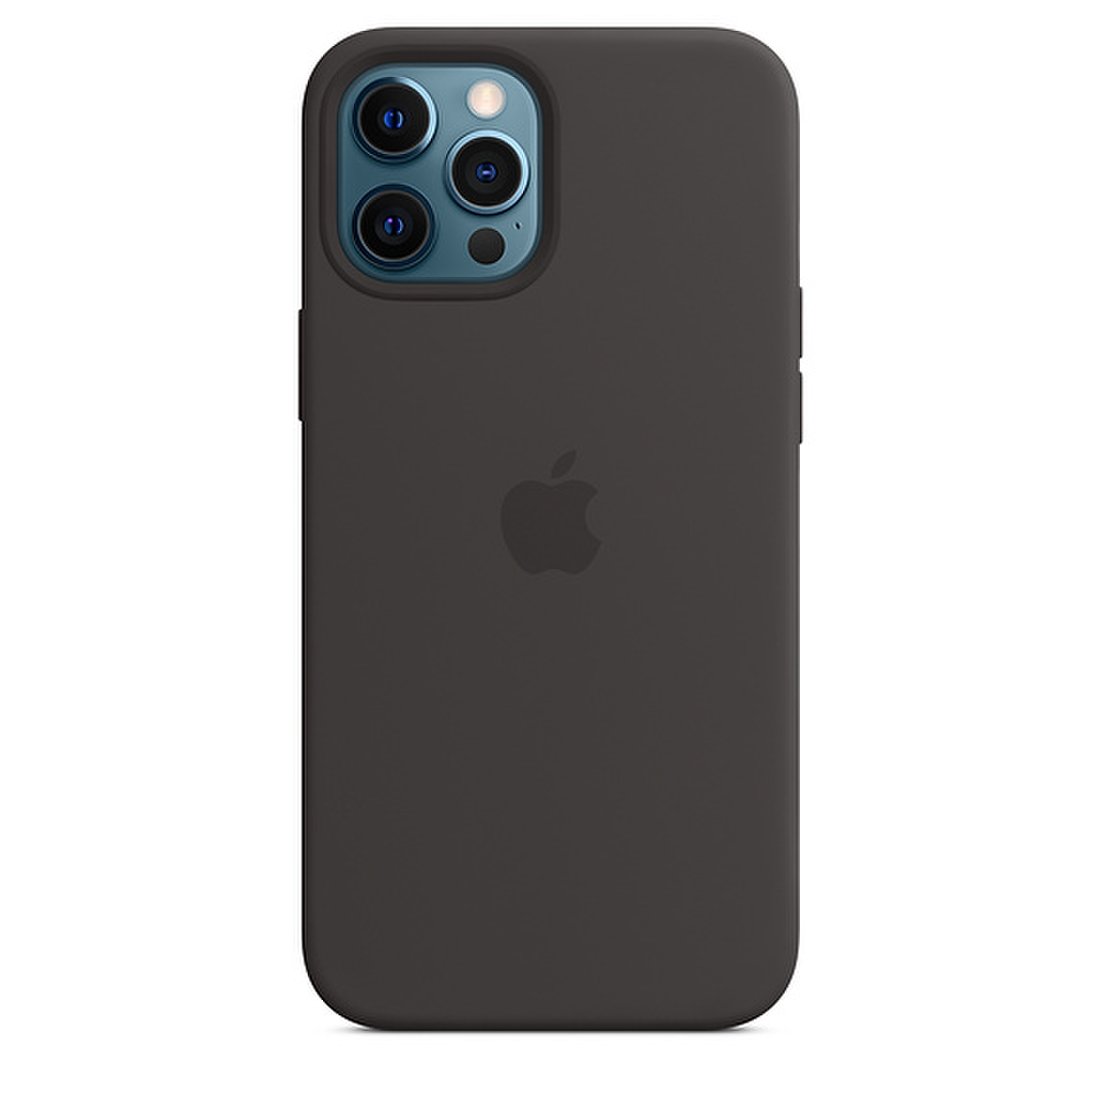 픽업전용) Magsafe형 Iphone 12 Pro Max 실리콘 케이스 - 블랙, 이마트몰, 당신과 가장 가까운 이마트